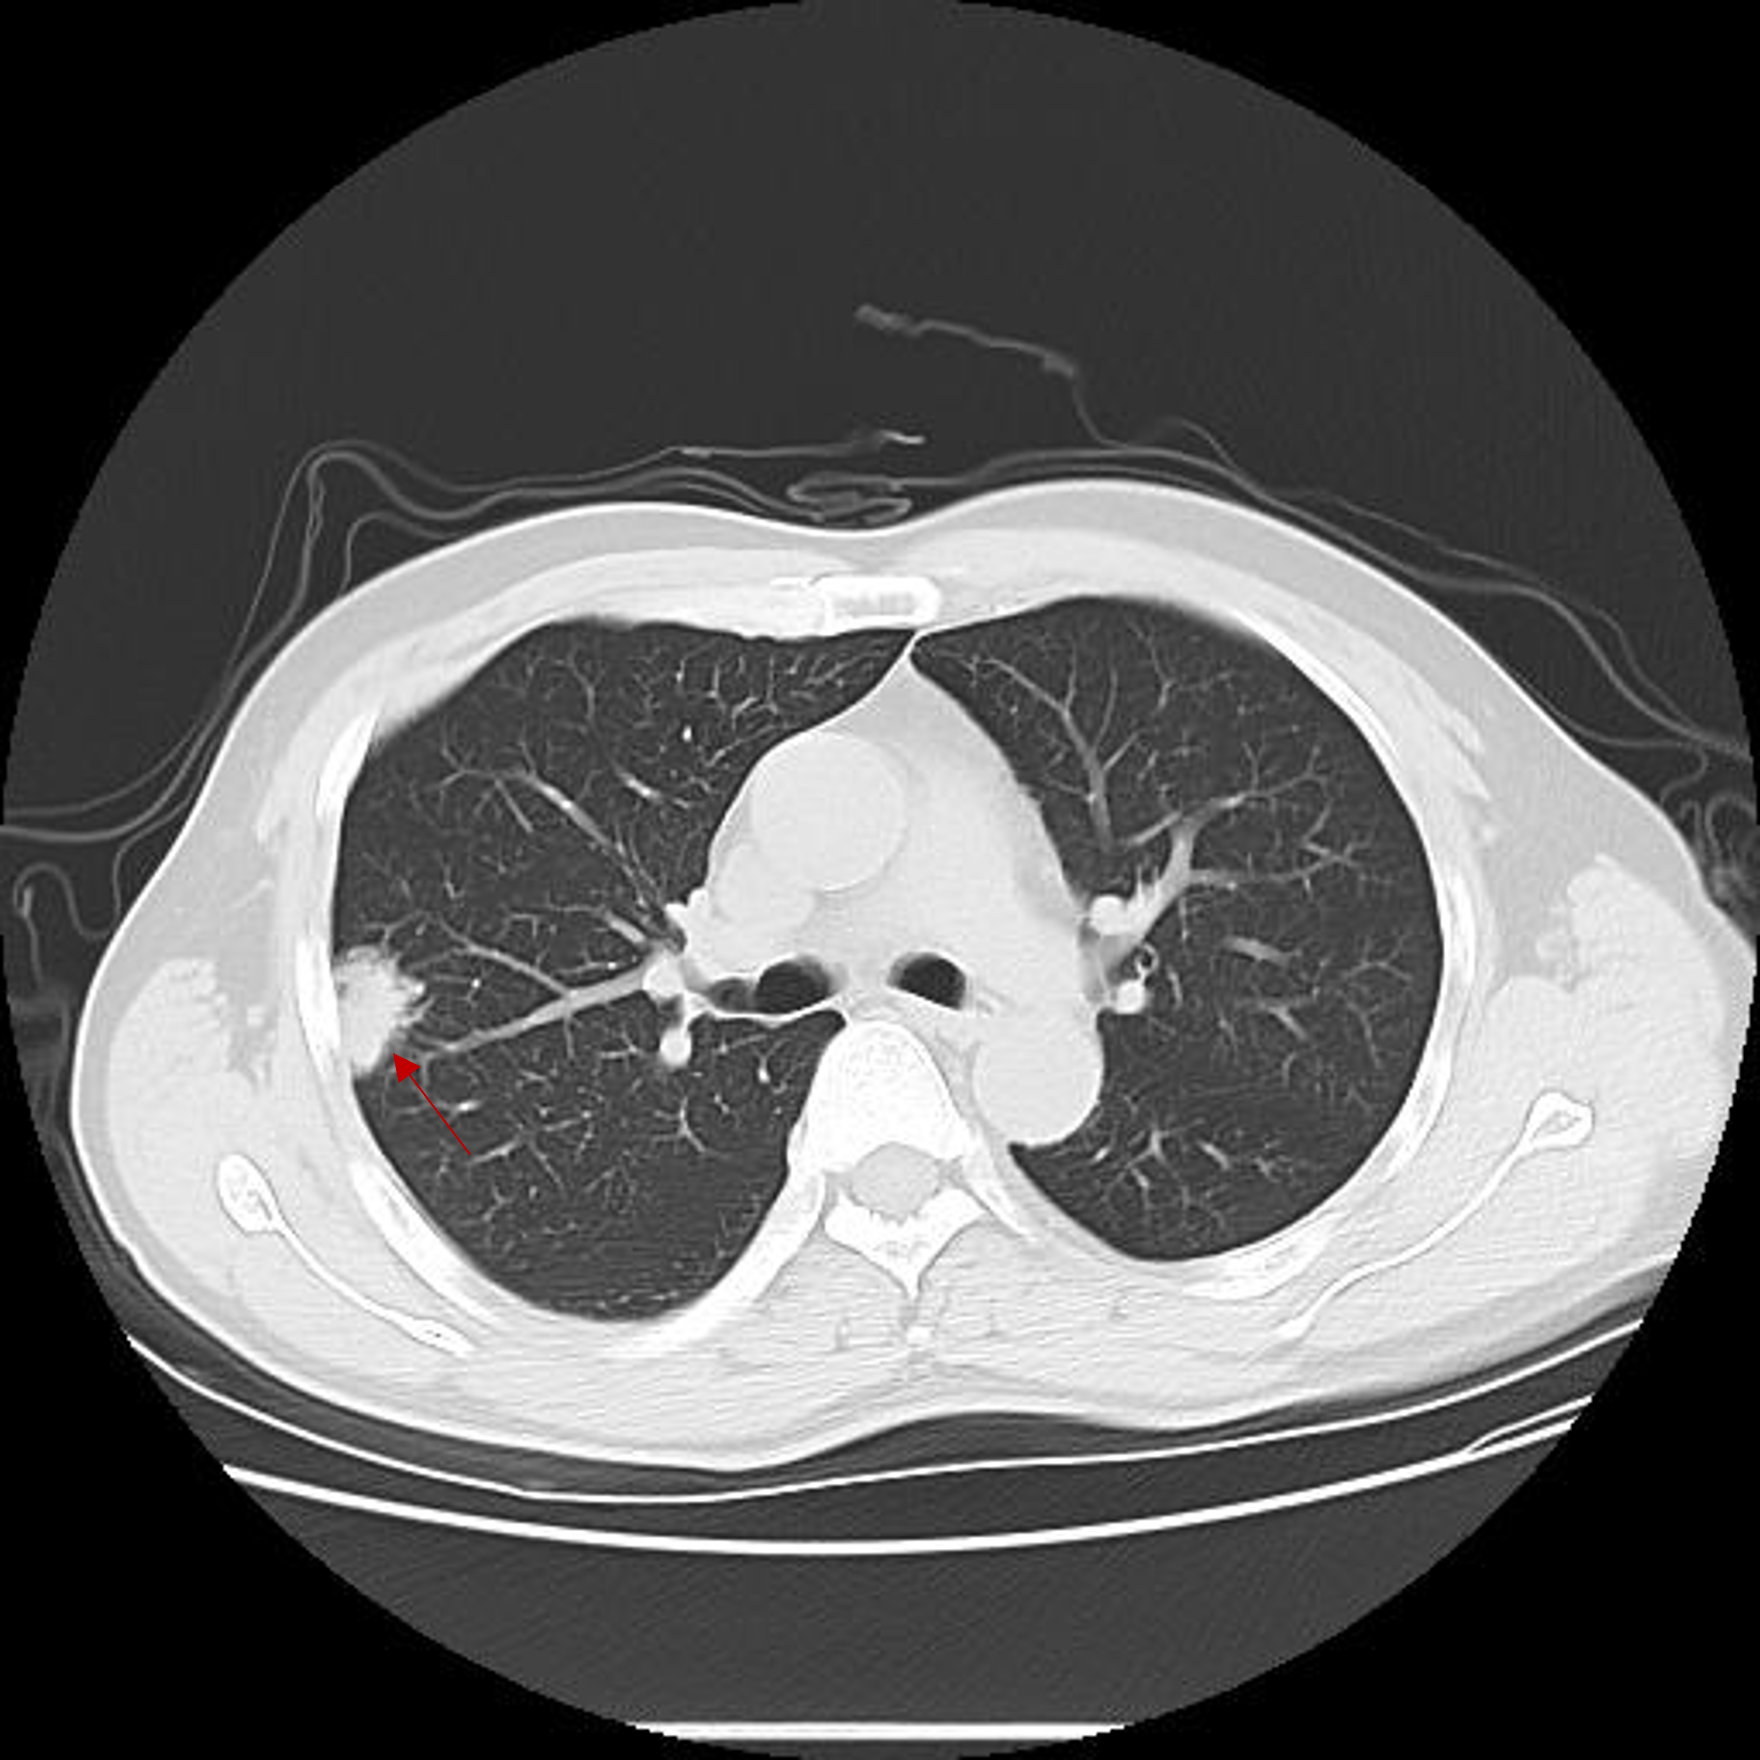 肺癌ct图片 图解图片